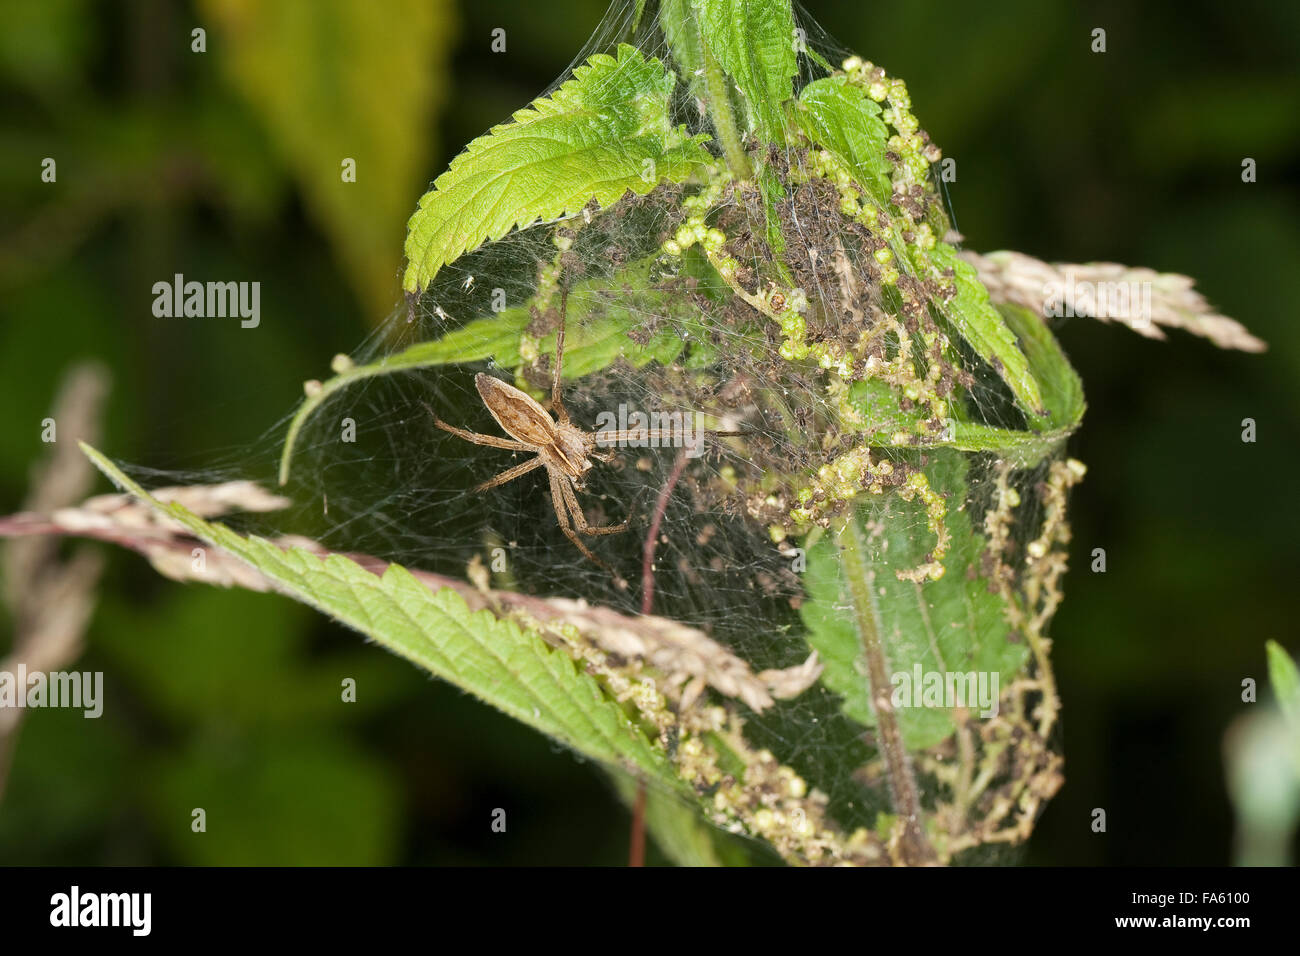 Fantastica pesca spider, vivaio spider web, Listspinne, List-Spinne, Raubspinne, Brautgeschenkspinne, Pisaura mirabilis Foto Stock